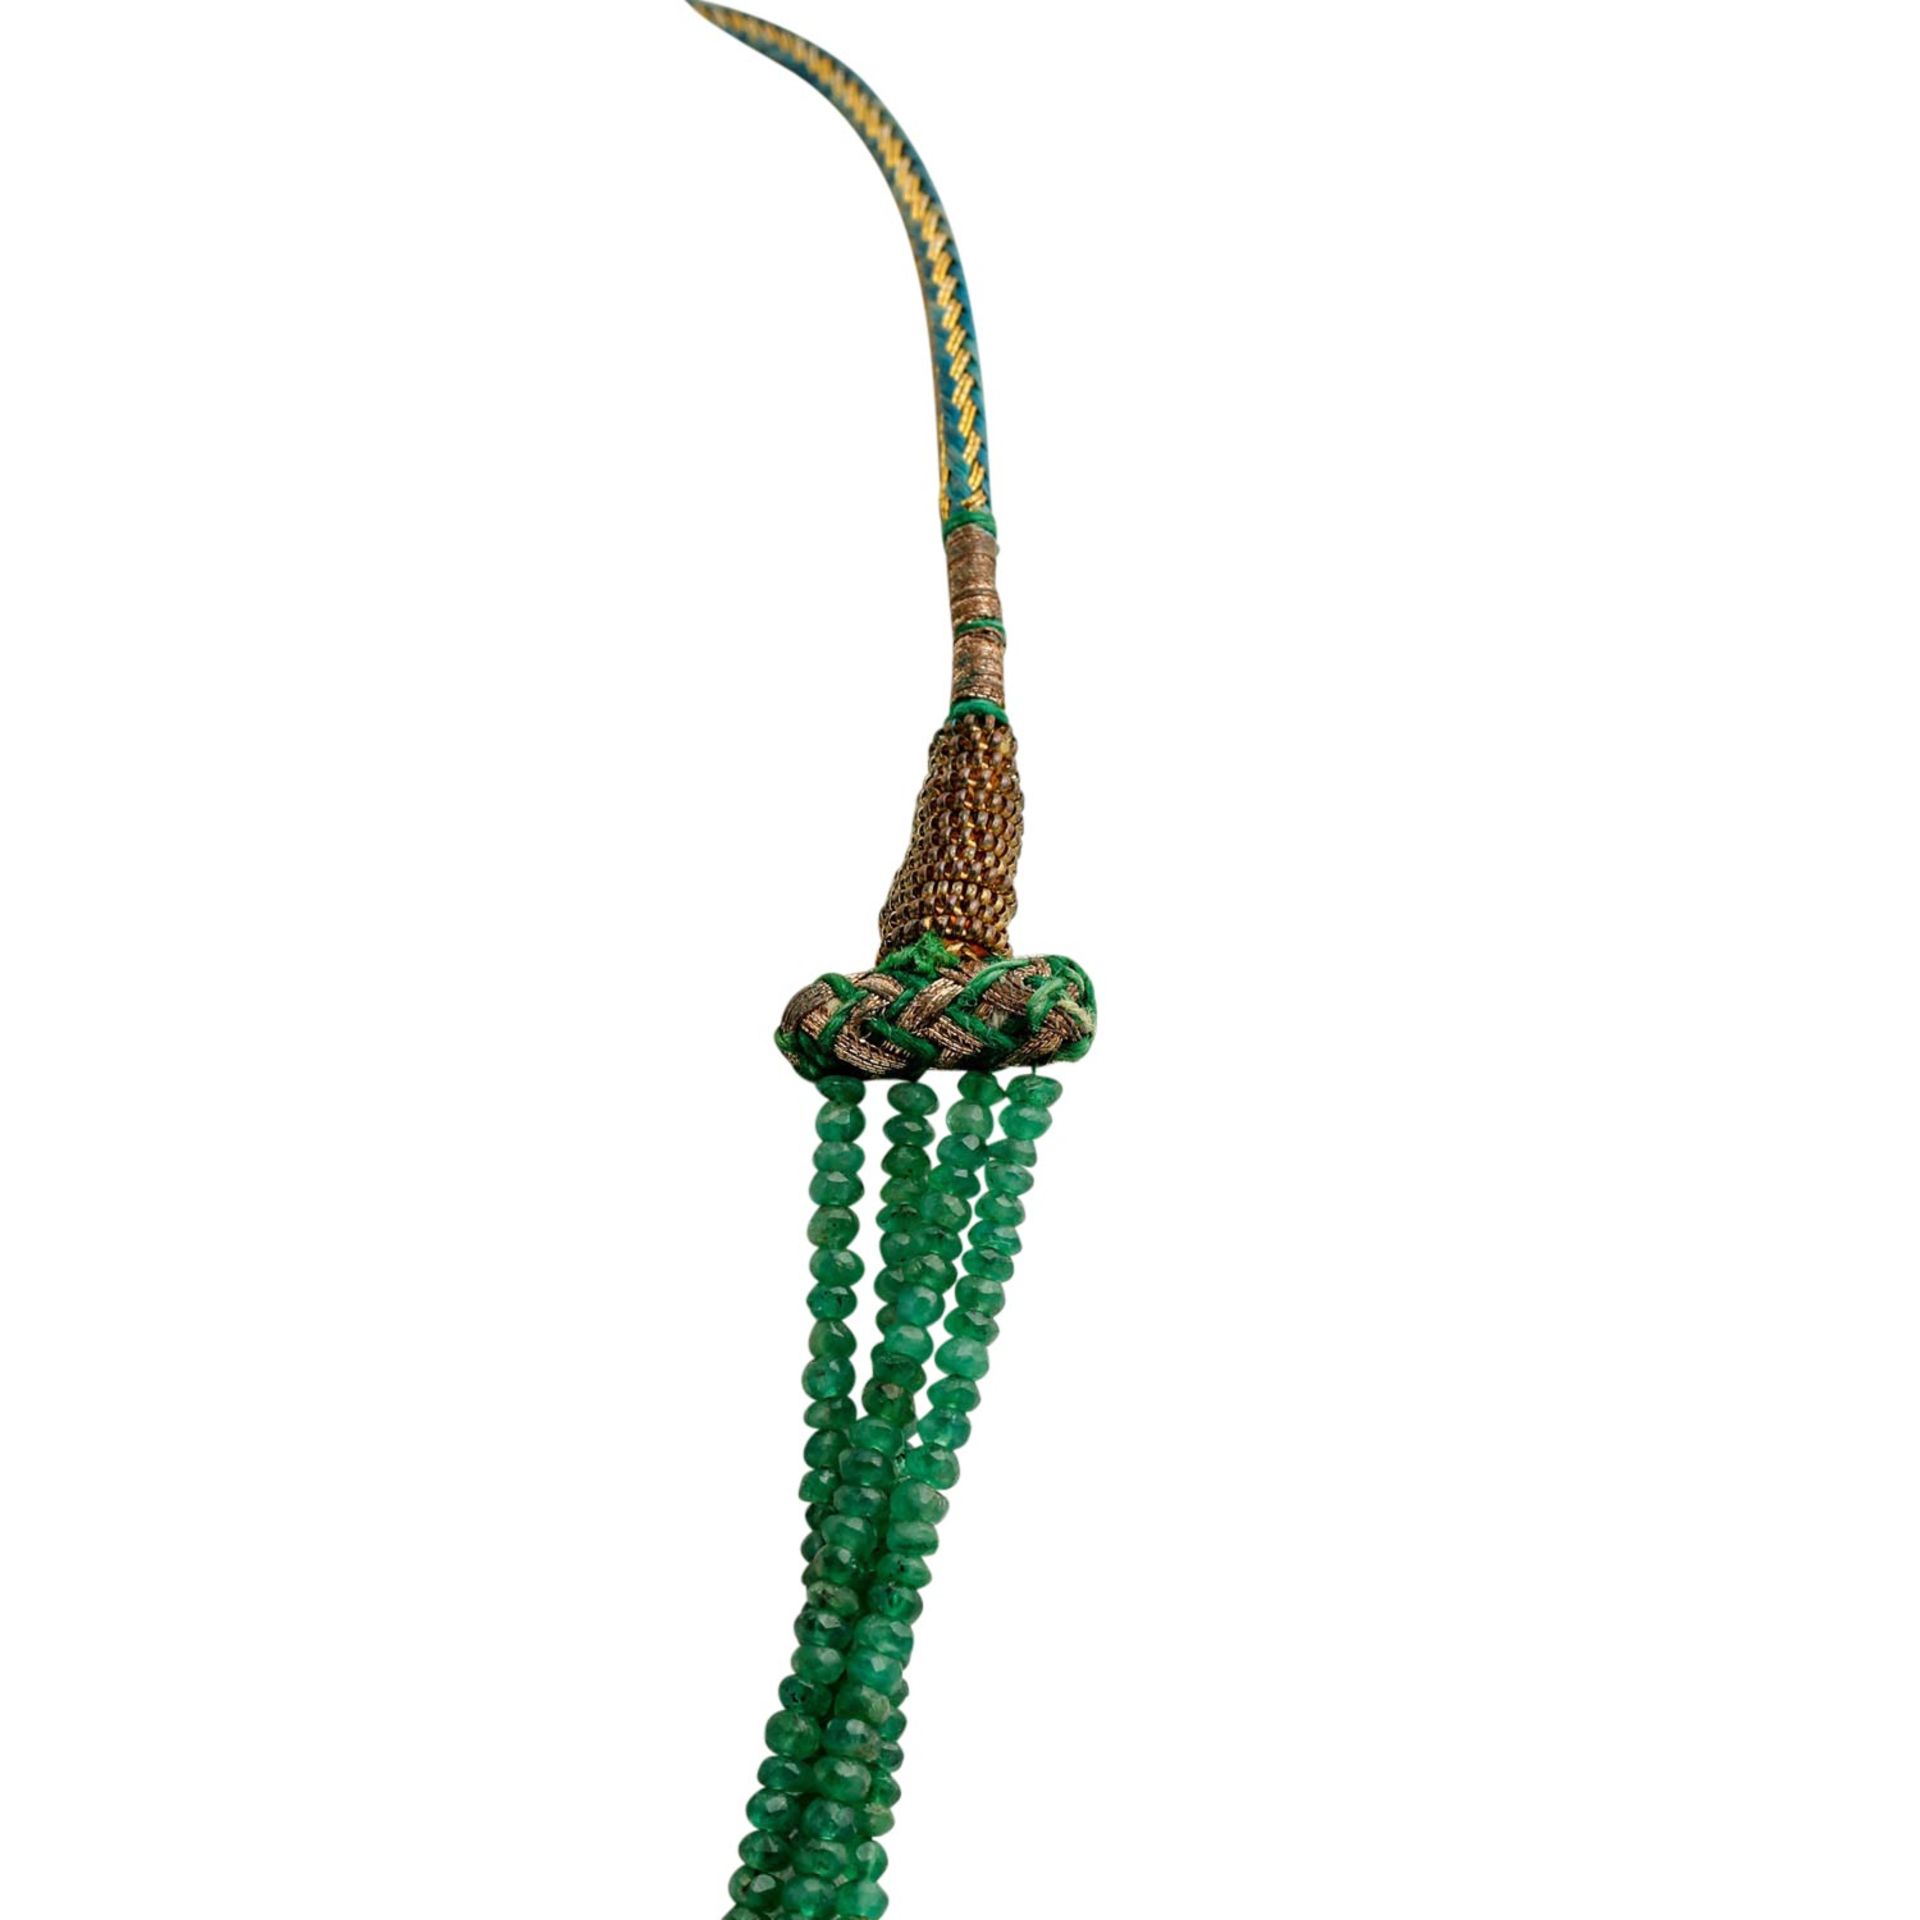 Smaragdkette 4-reihig, facettierte Linsen ca. 2,5-8,5 mm im Verlauf, tansparent bis tr - Bild 3 aus 4